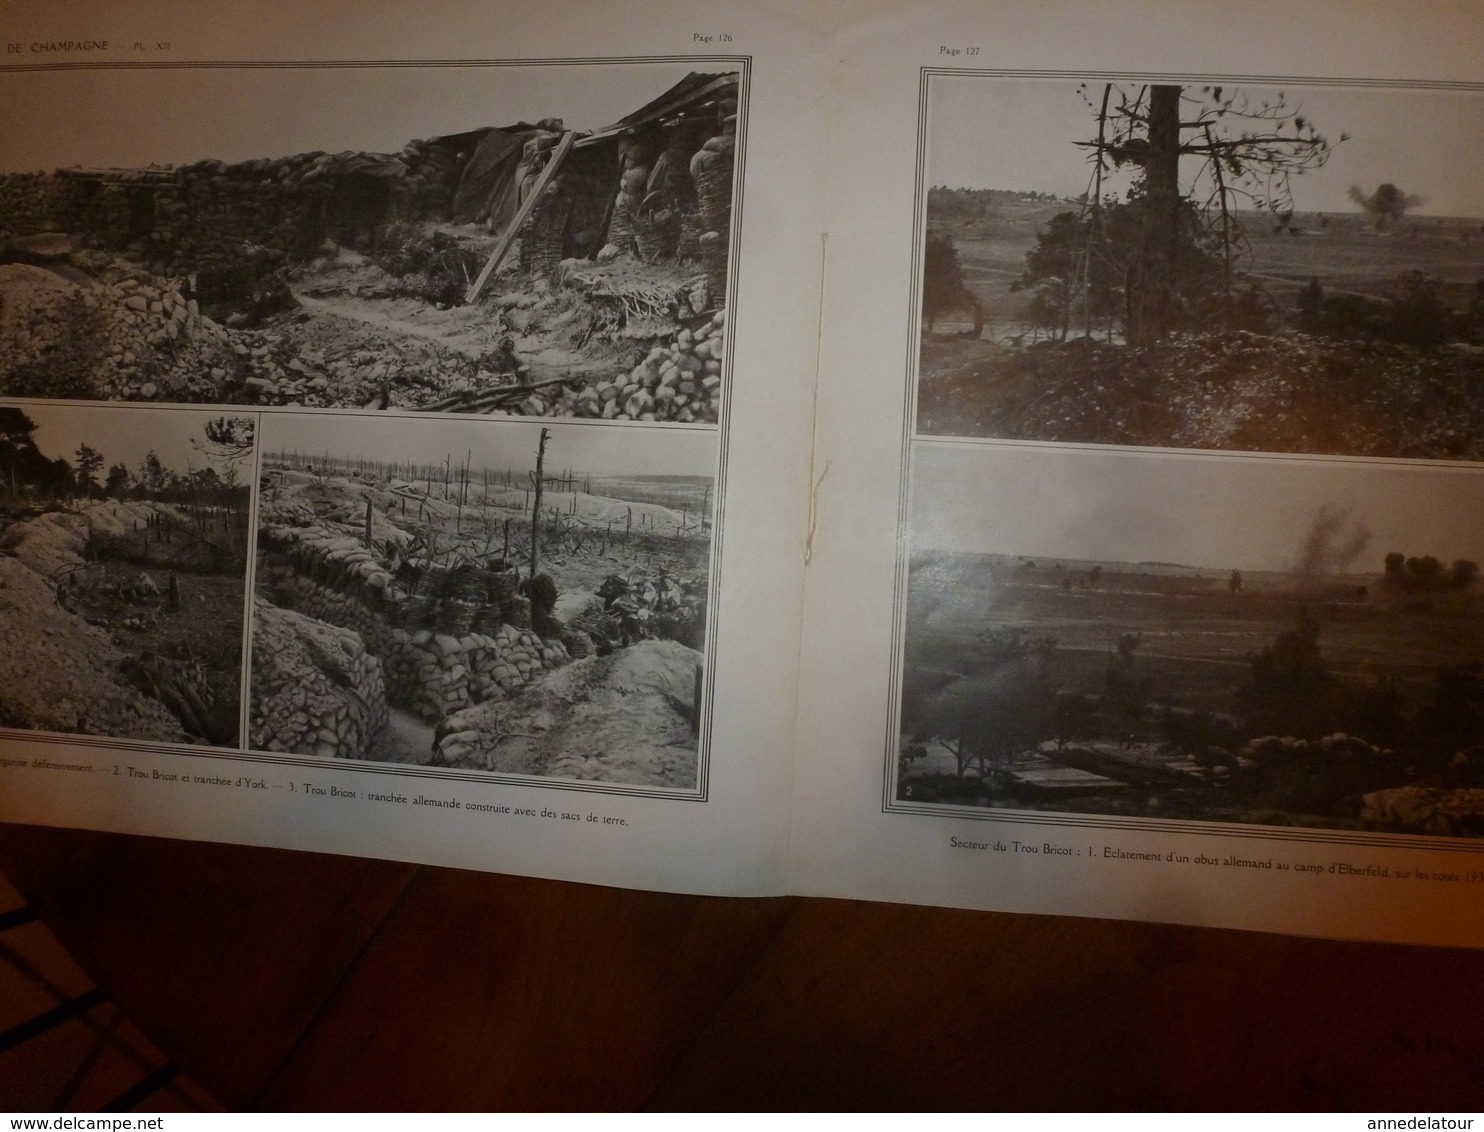 1914-1918 LA GUERRE Documents-photos de l'Armée(Bataille:St-Hilaire,Souain,Navarin,Perthes,Tahure,La Main-de-Massige;etc